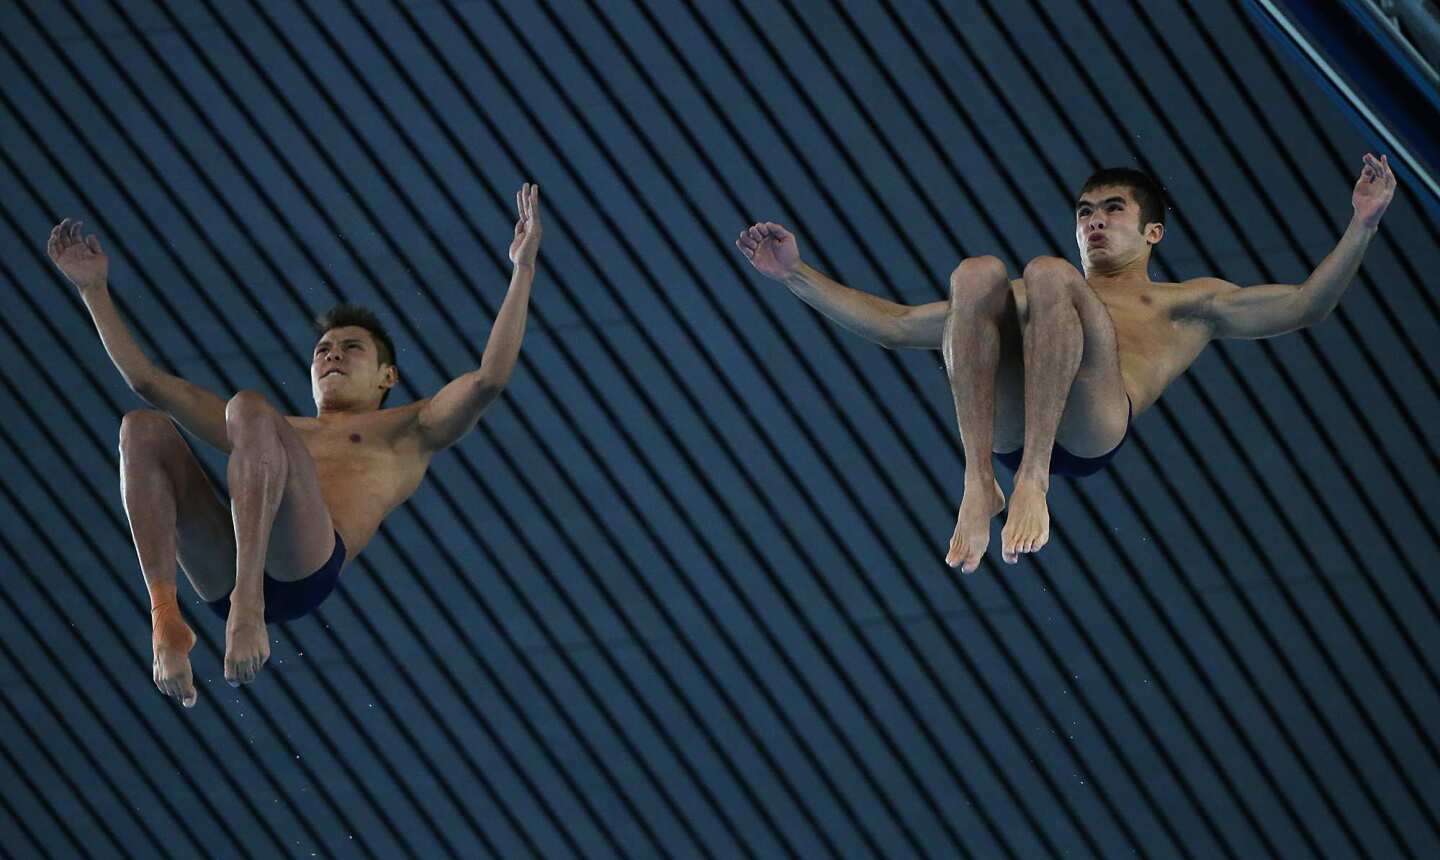 Men's synchronized diving